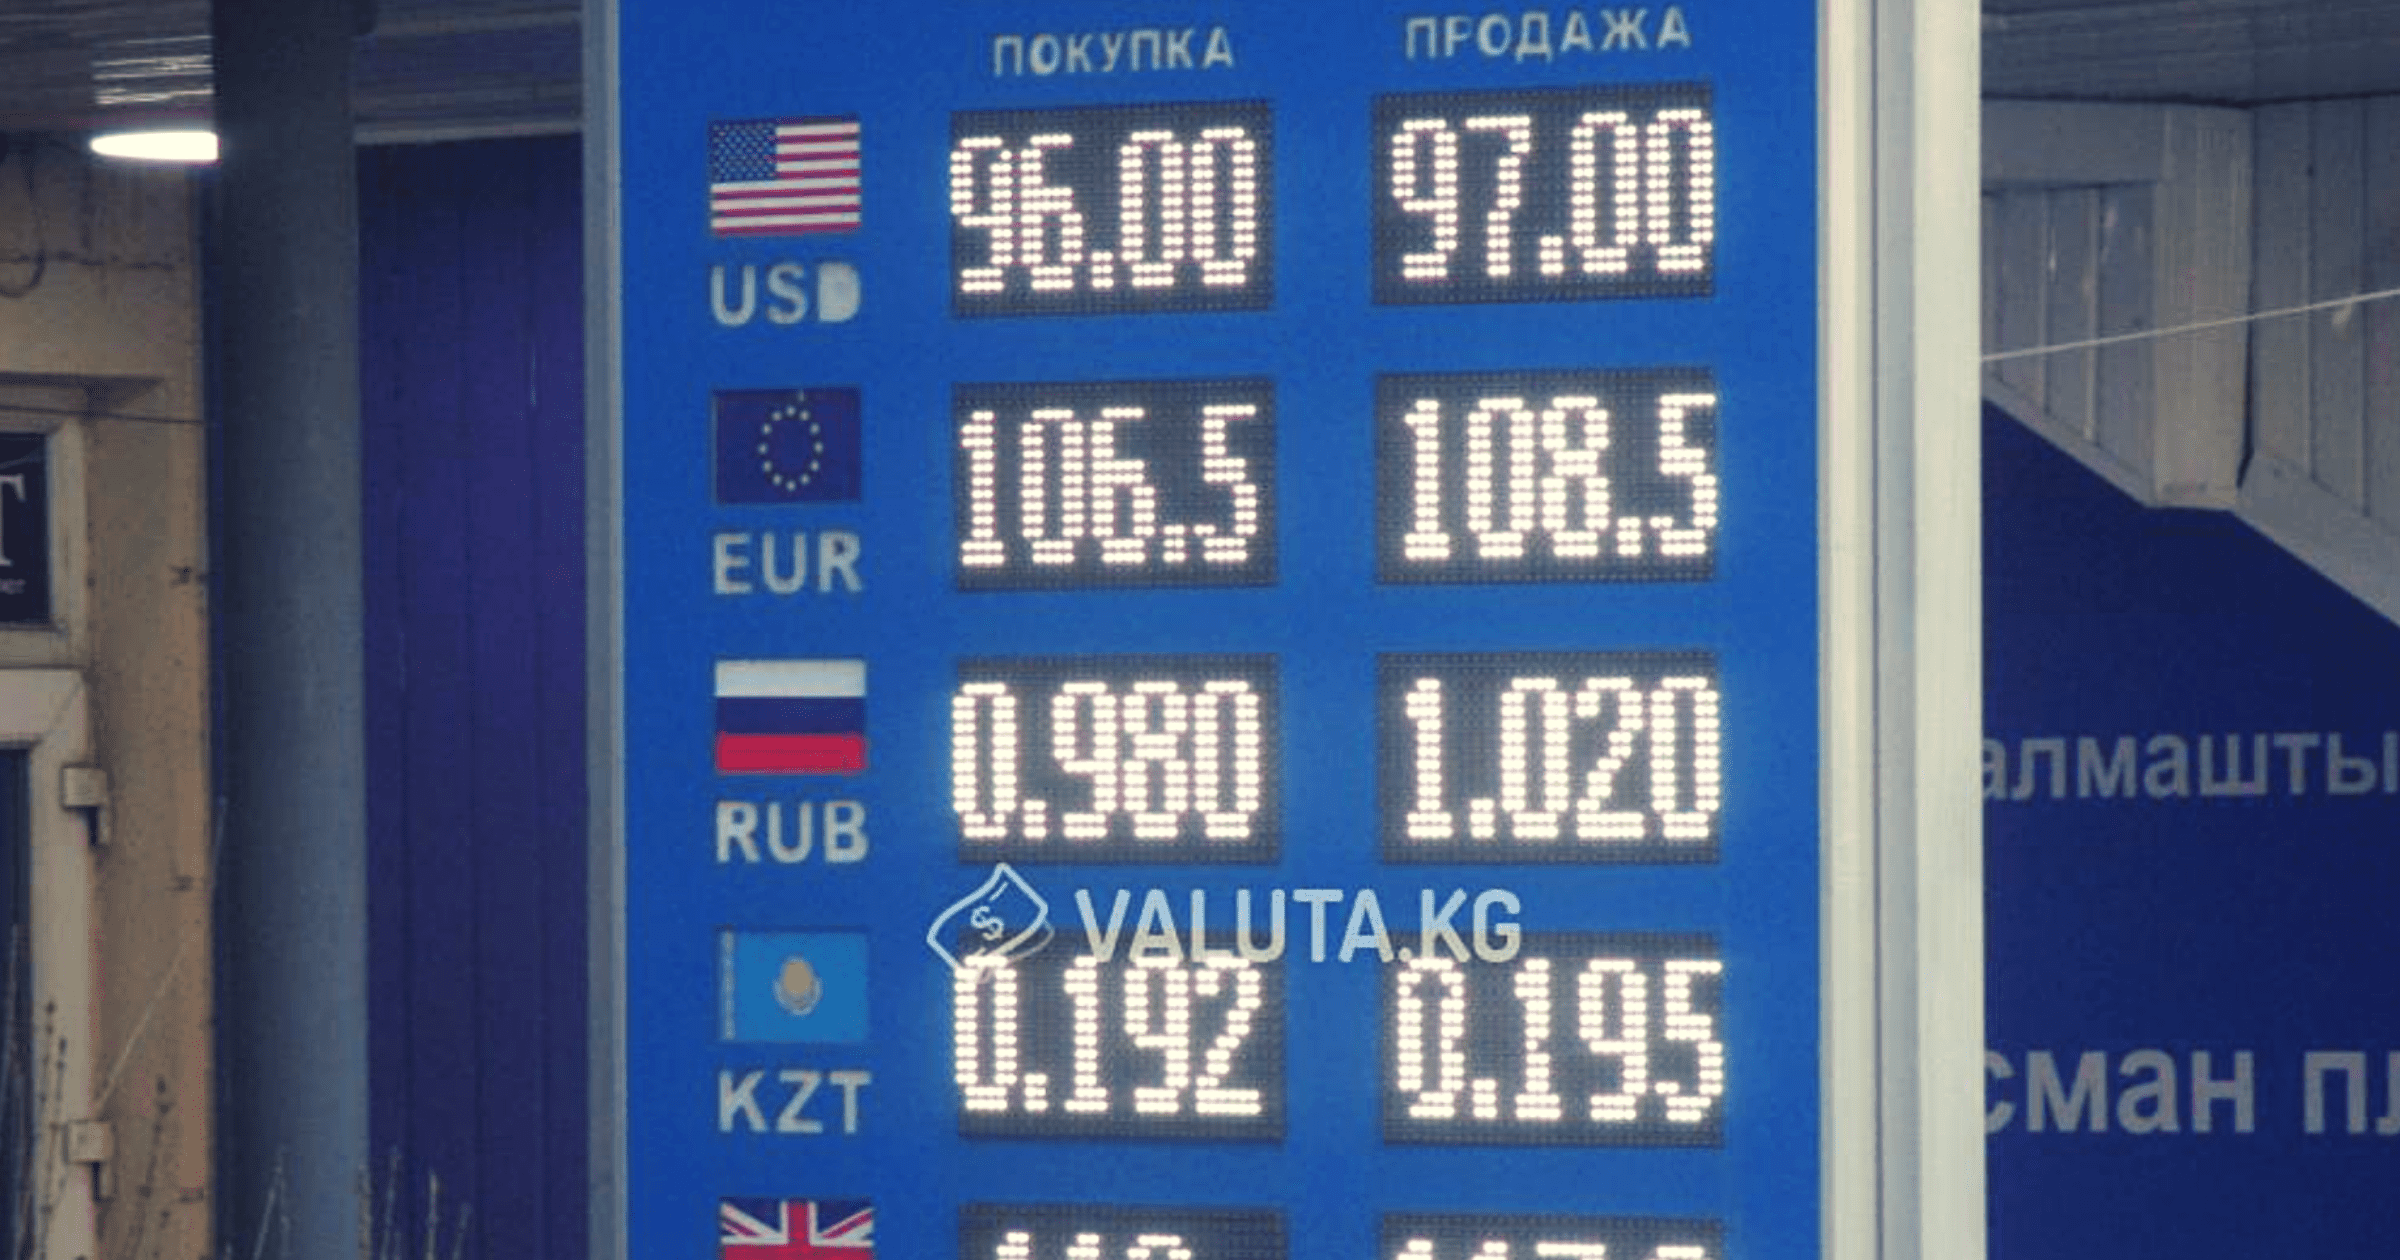 Курс доллара в Кыргызстане держится на уровне 96-97 сомов изображение публикации